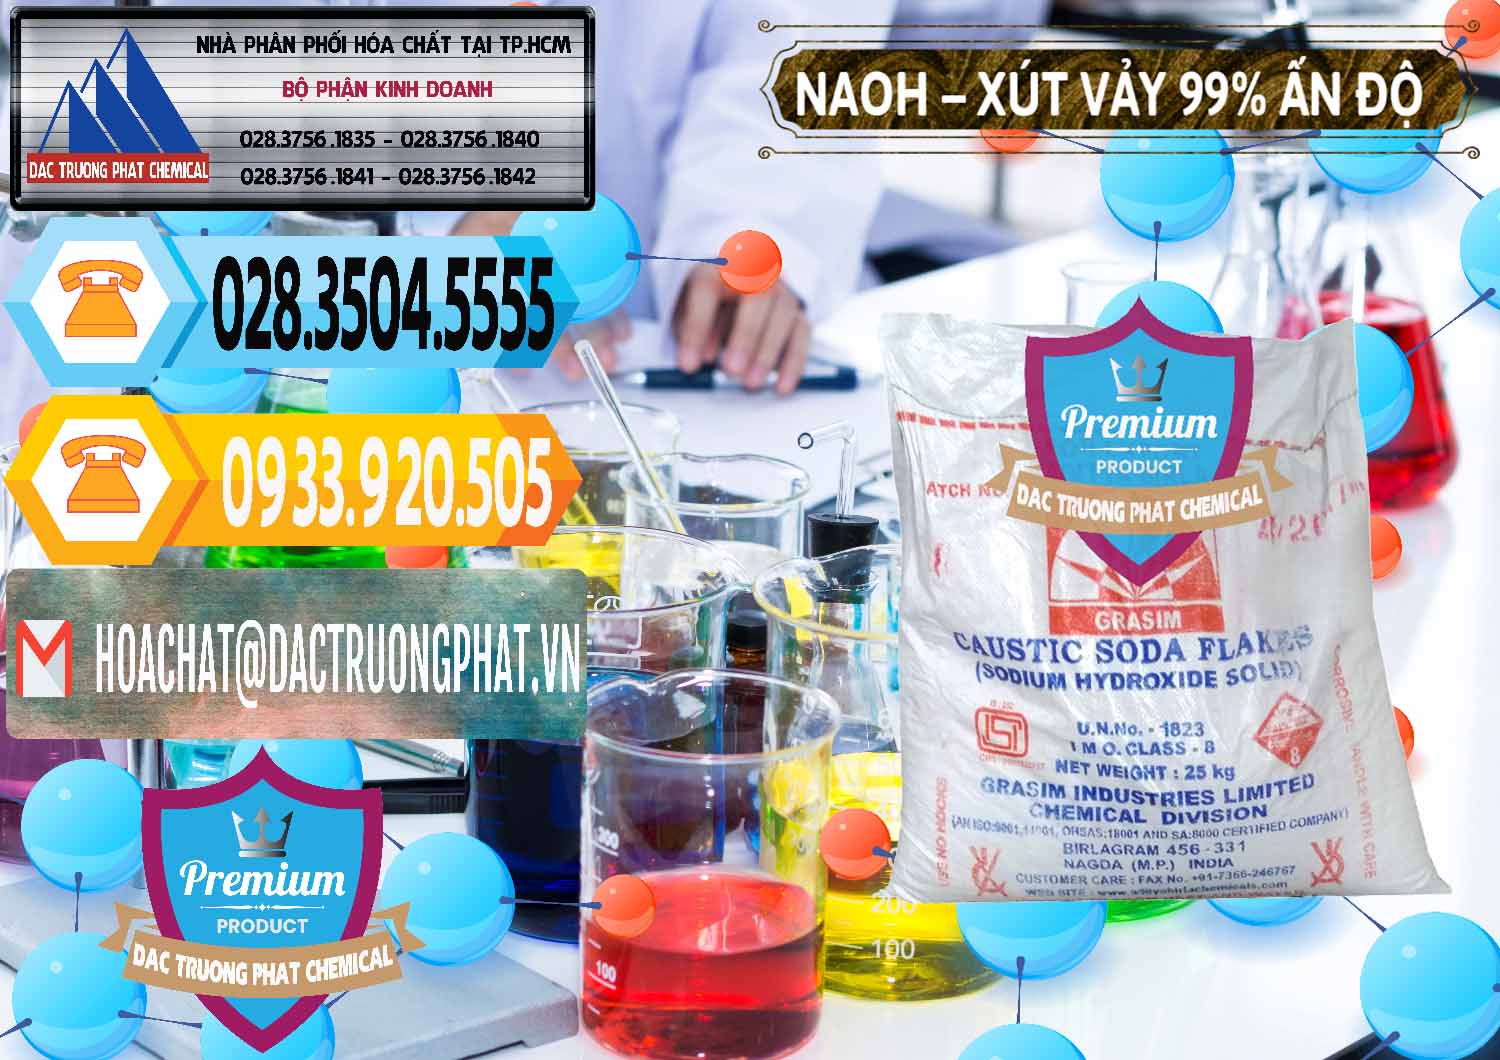 Nơi bán ( cung cấp ) Xút Vảy - NaOH Vảy 99% Aditya Birla Grasim Ấn Độ India - 0171 - Đơn vị cung cấp _ phân phối hóa chất tại TP.HCM - hoachattayrua.net